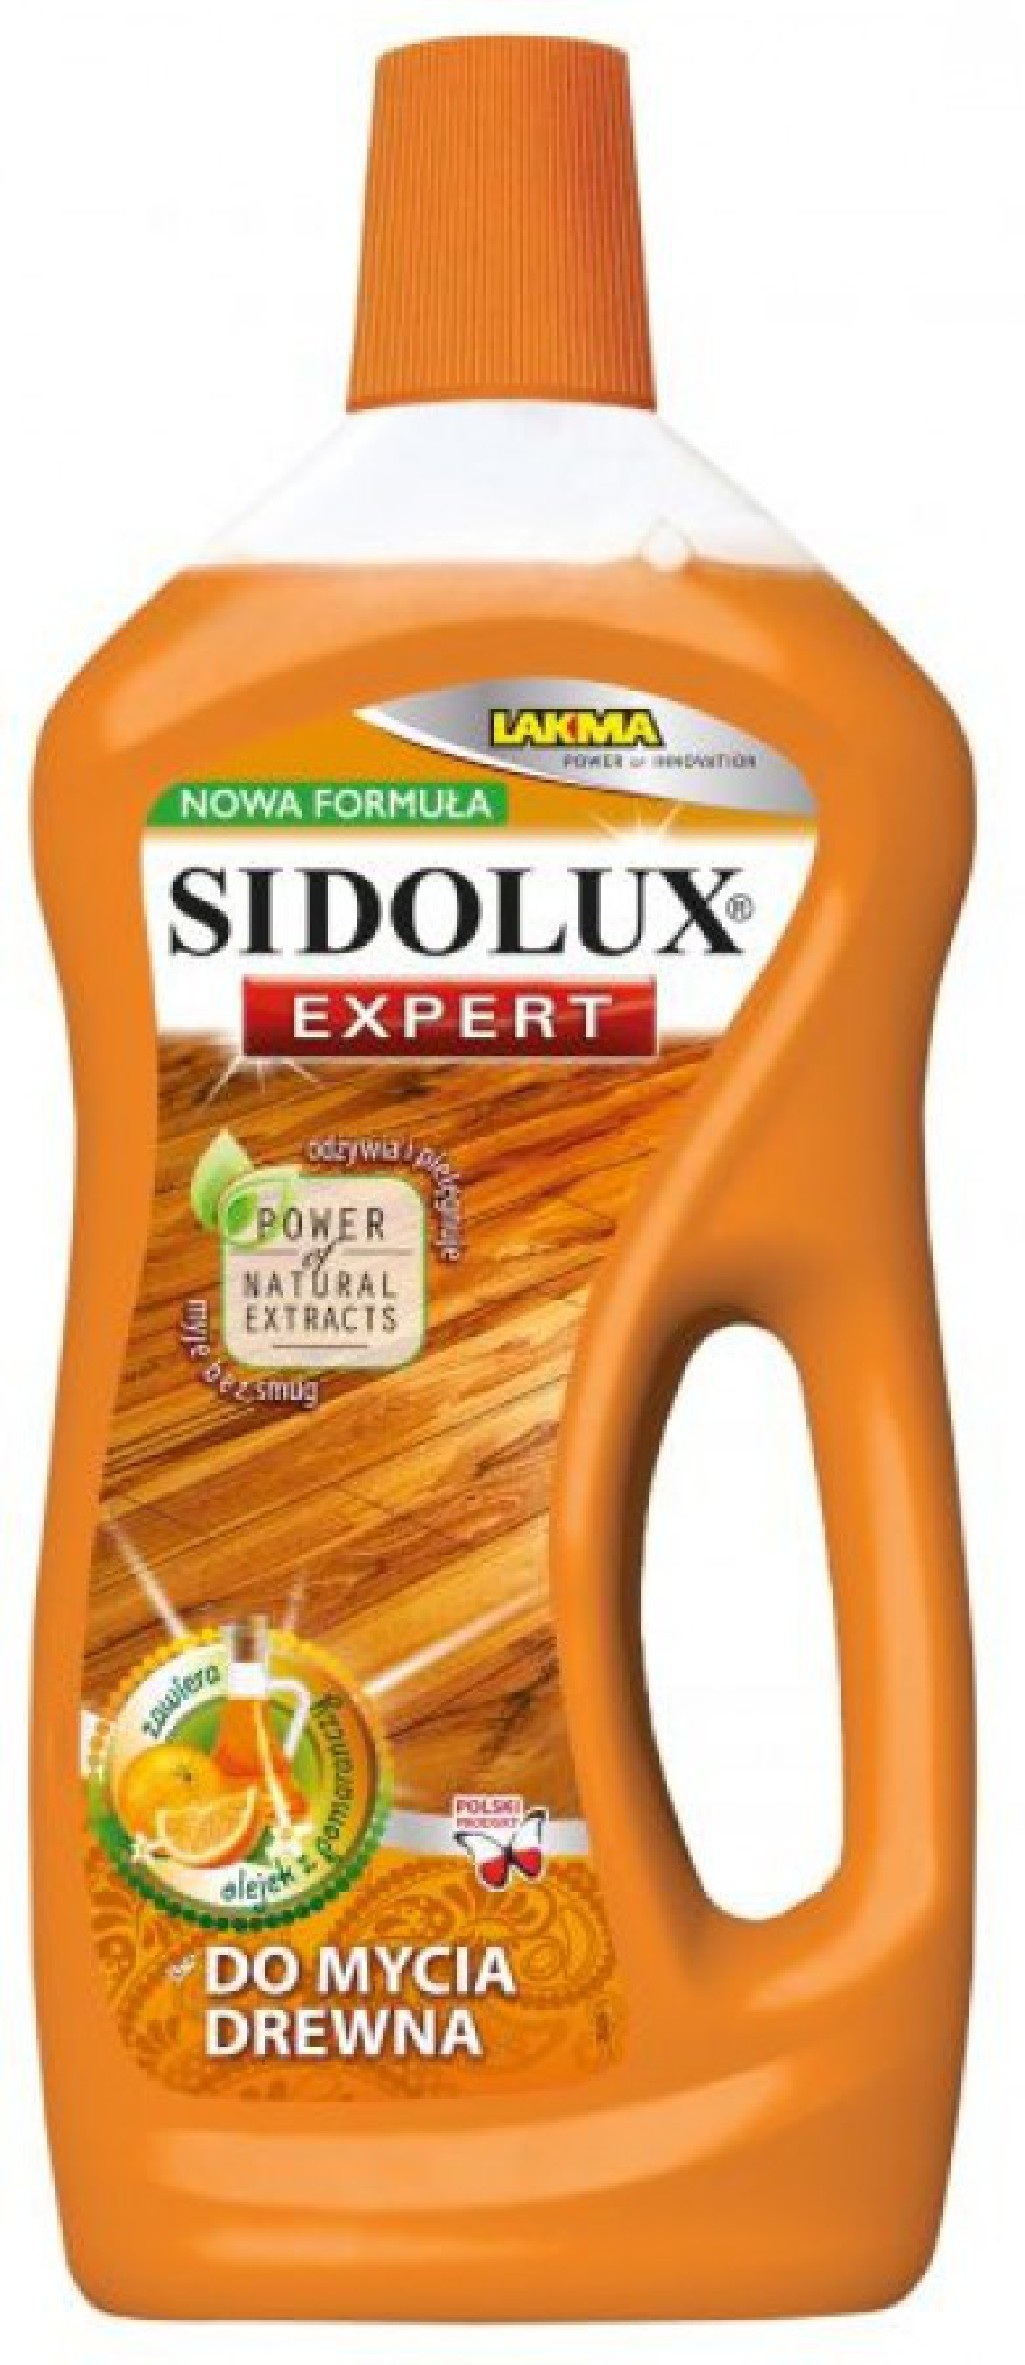 SIDOLUX Expert Środek do mycia drewna 750ml